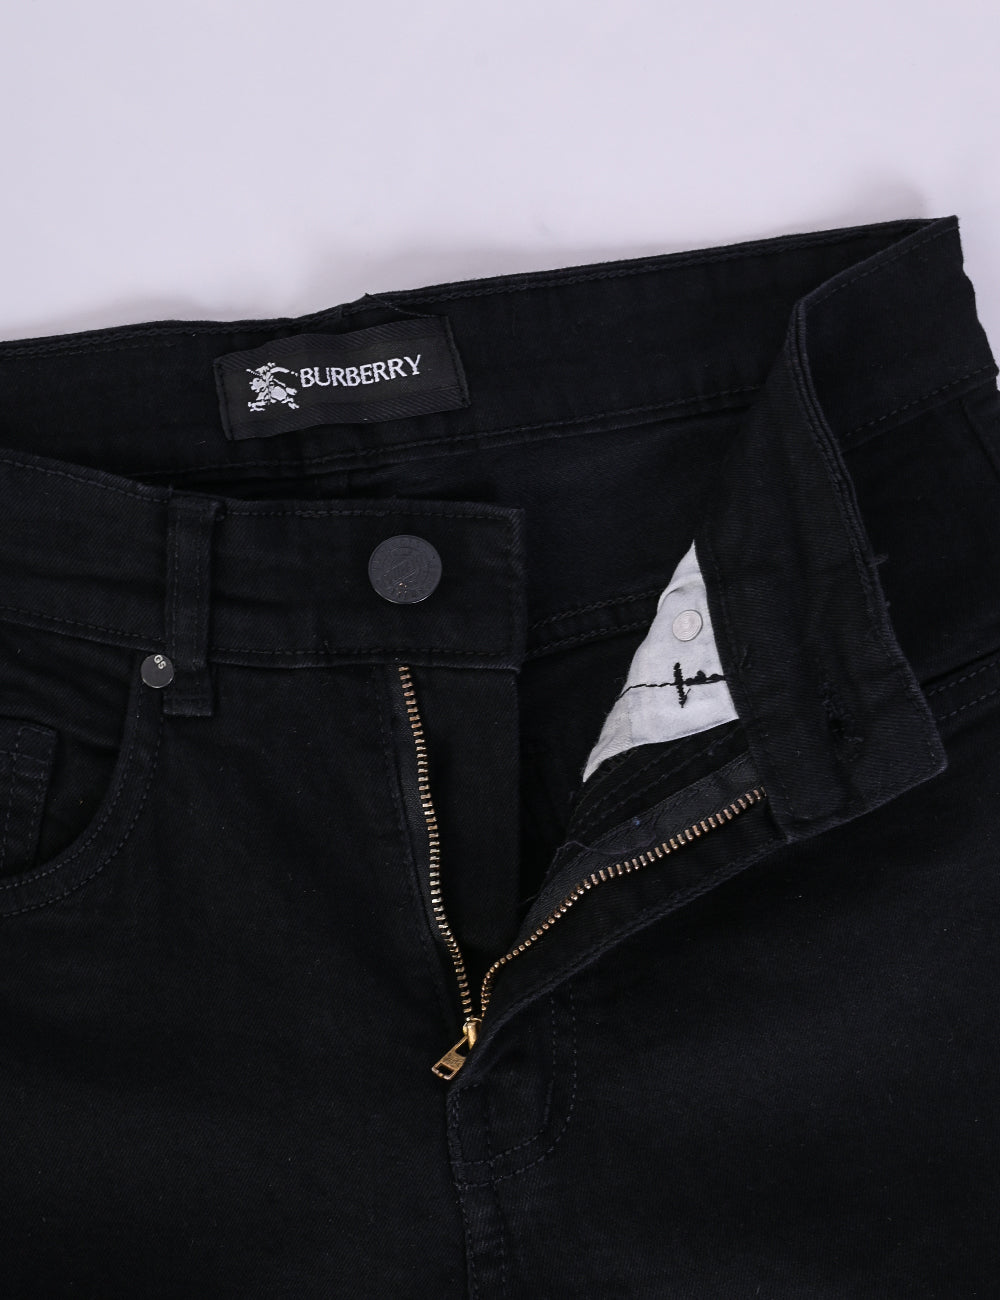 TMDJ-01-Black - Denim Jeans For Mens